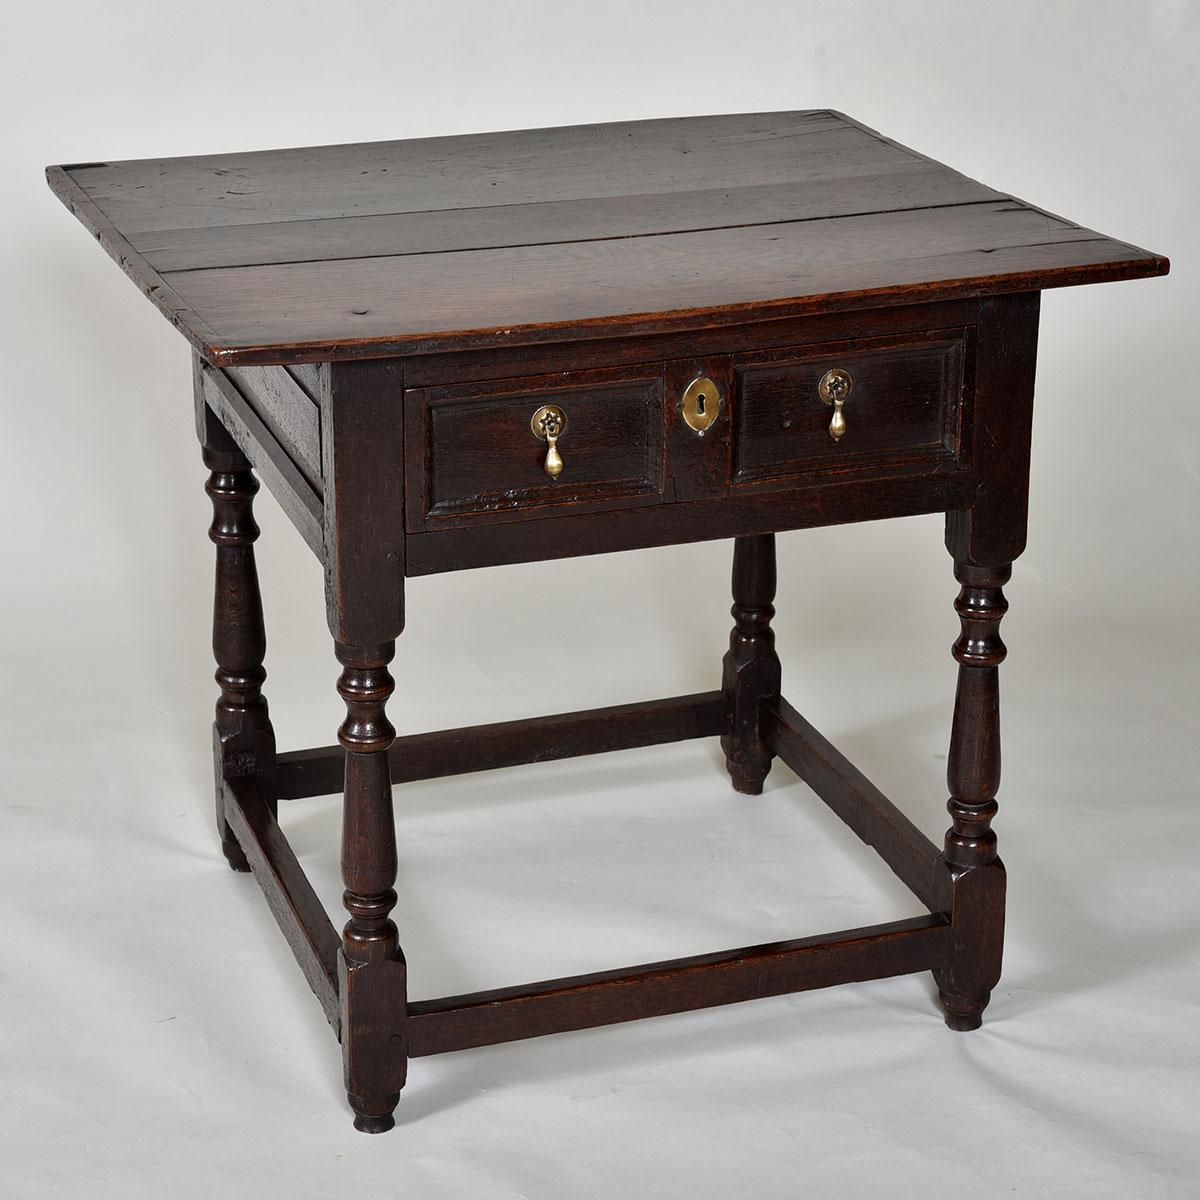 17th century Oak Side Table